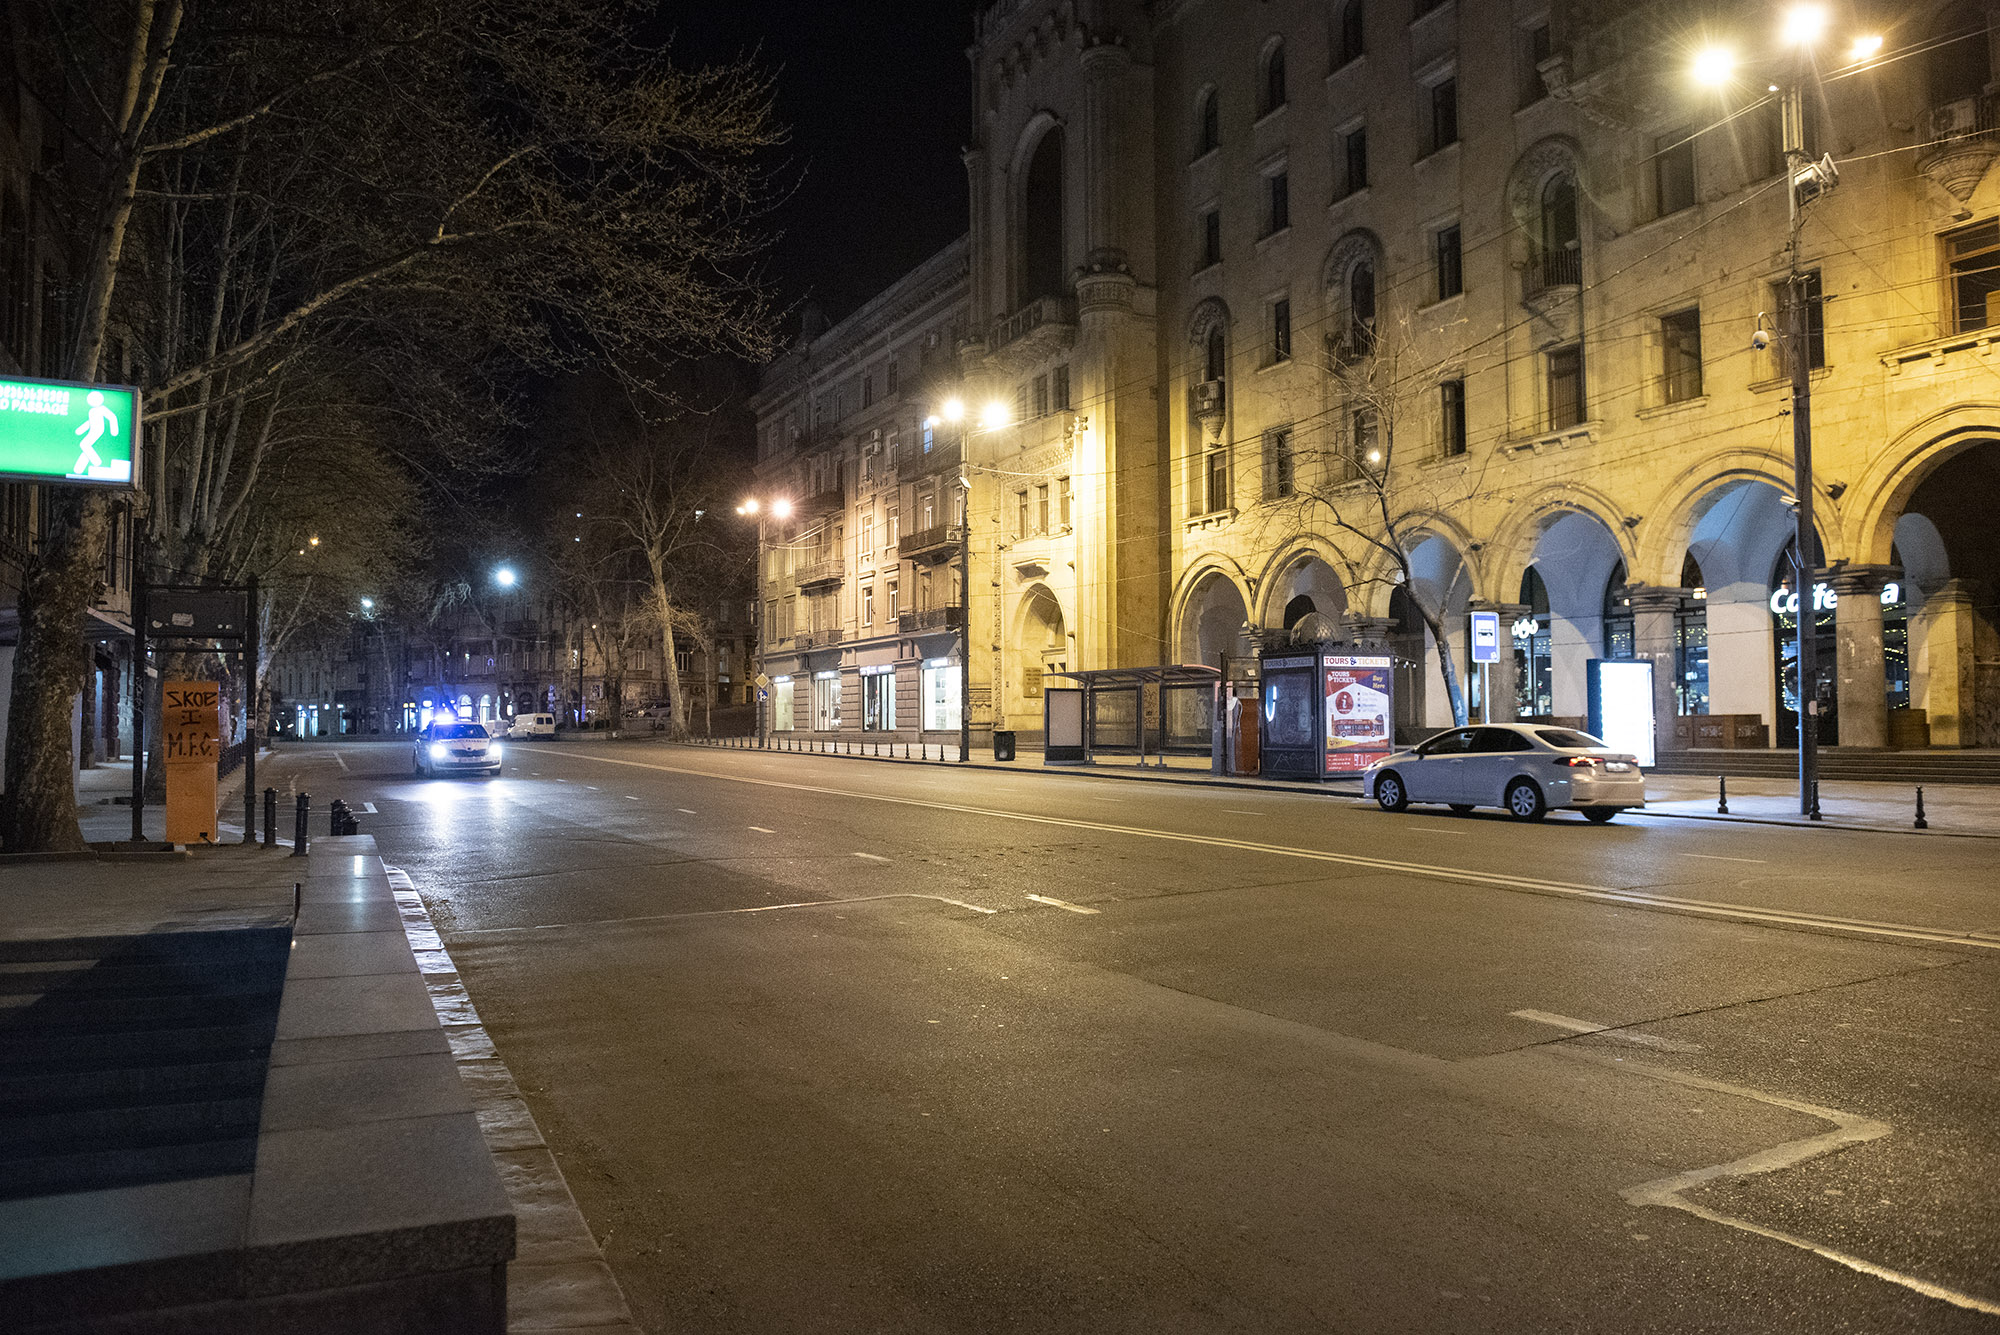 Tbilisi streets. Проспект Руставели Тбилиси. Тбилиси Руставели фото ночь. Ночной Тбилиси улицы. Тбилиси проспект Руставели фото.